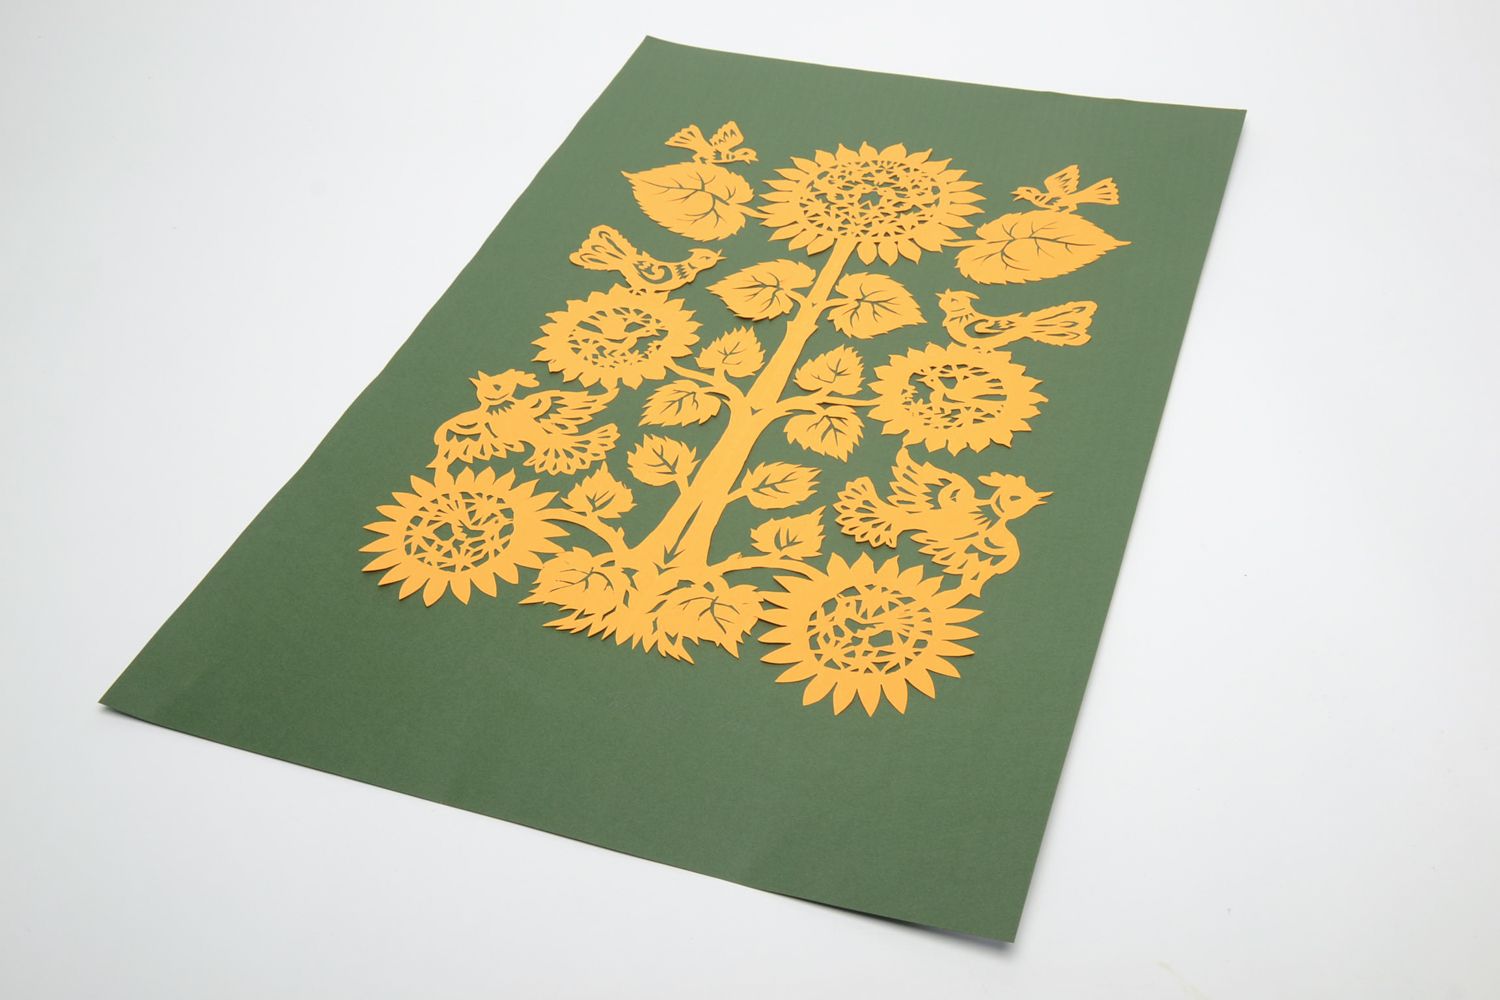 Вырезанная картина из бумаги витинанка на зеленом фоне Древо жизни фото 2